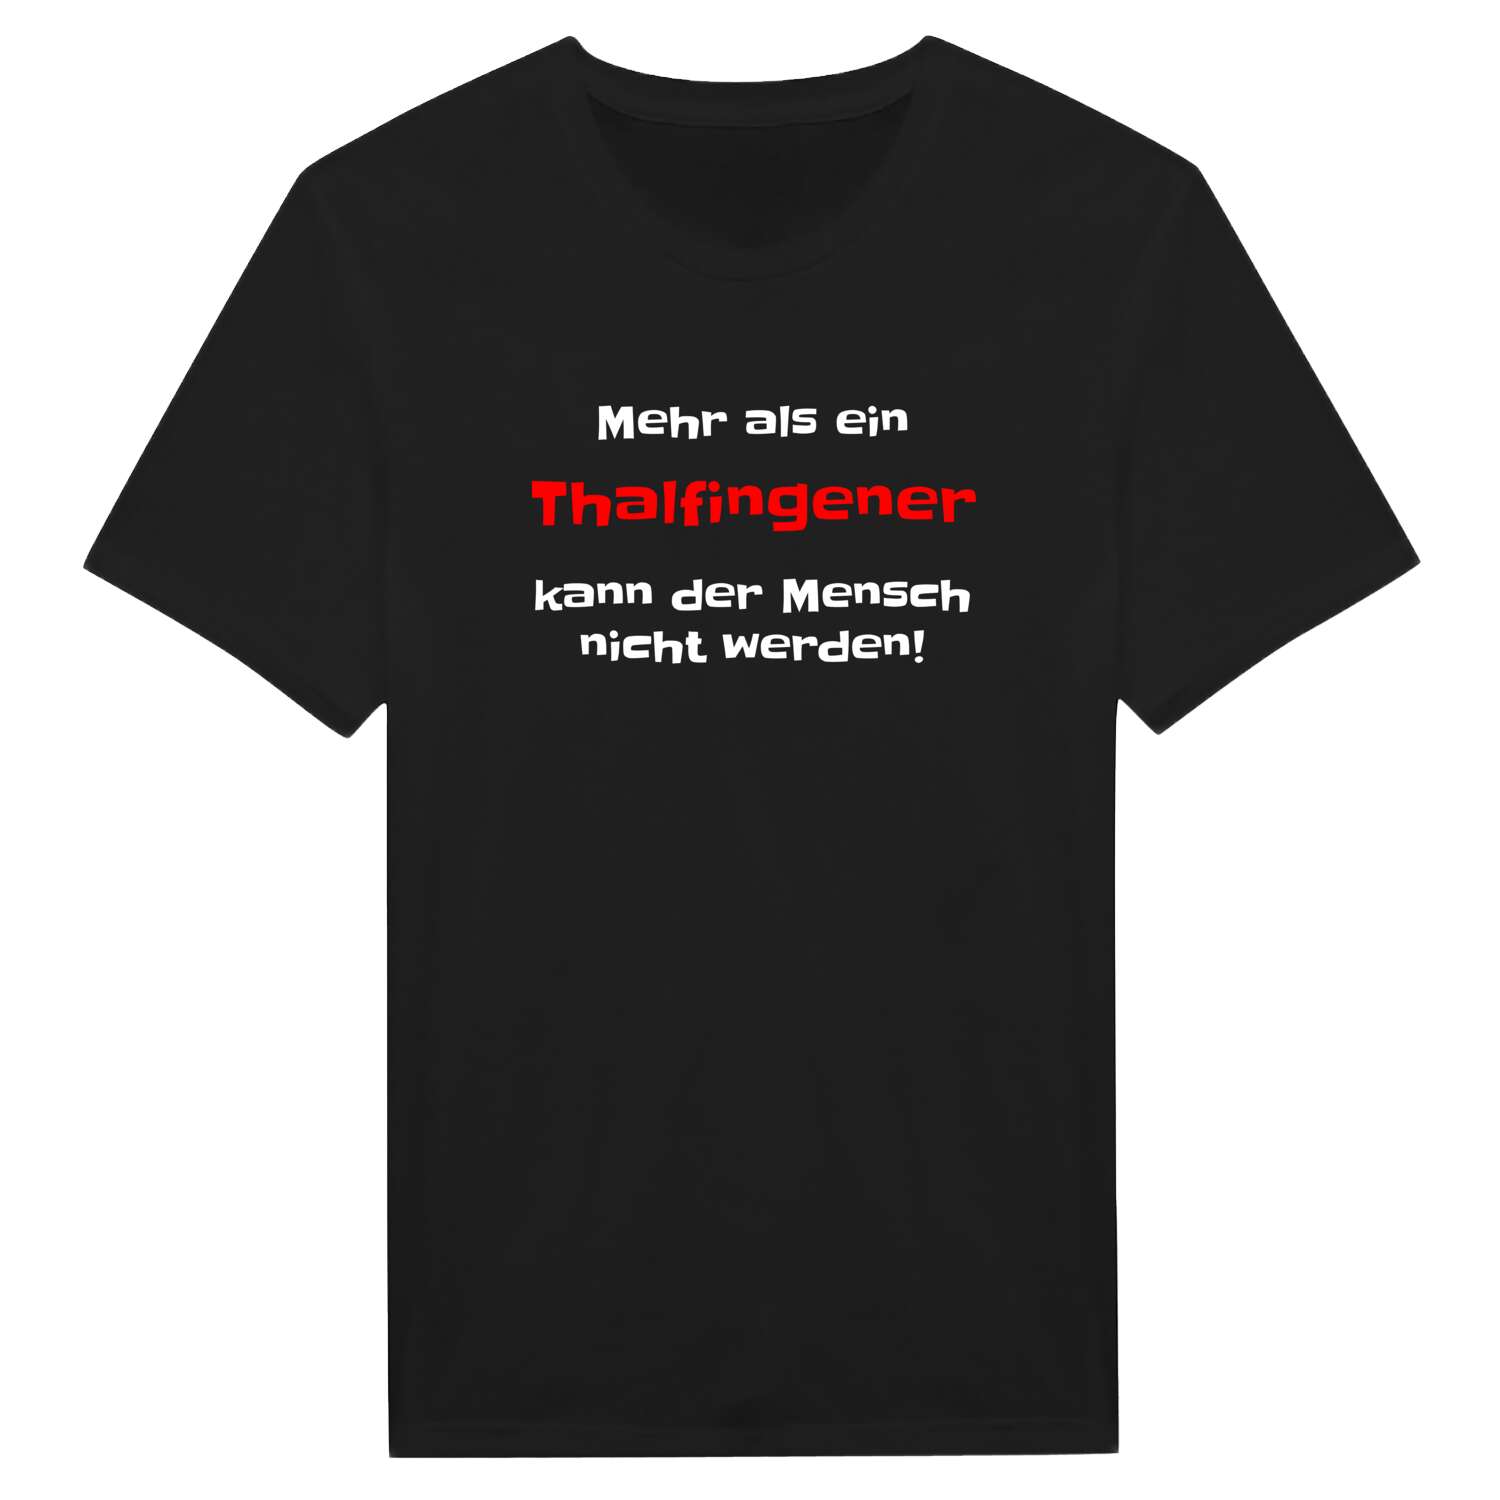 Thalfingen T-Shirt »Mehr als ein«